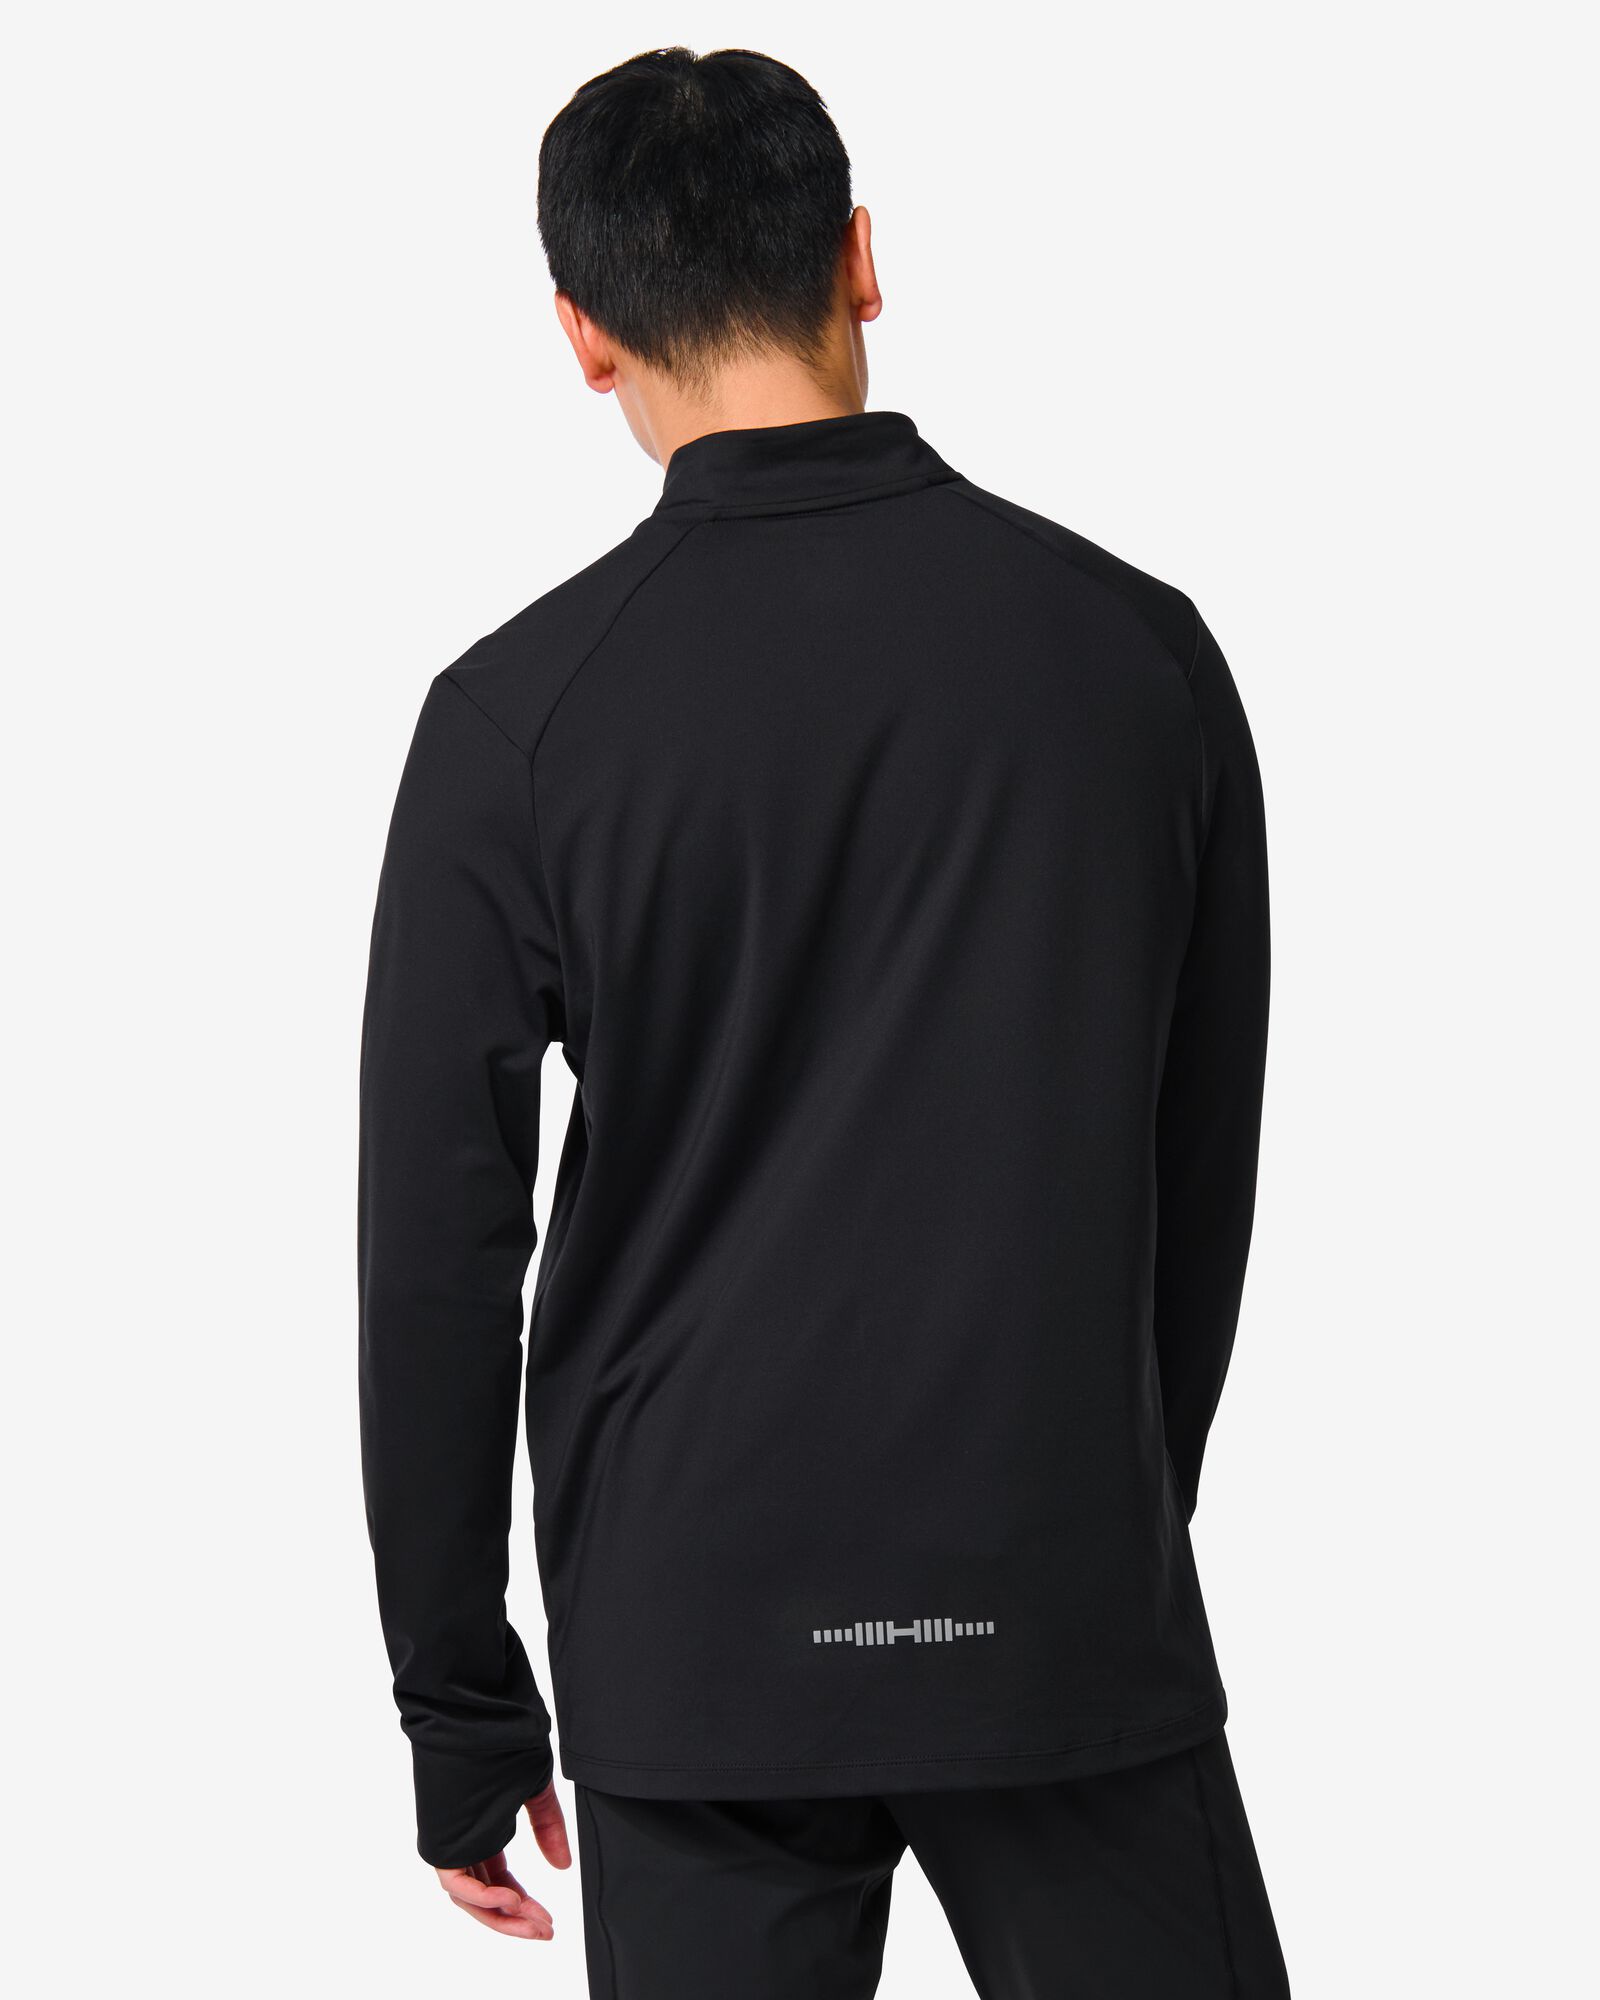 Herren-Fleece-Sportshirt schwarz M - 36090161 - HEMA